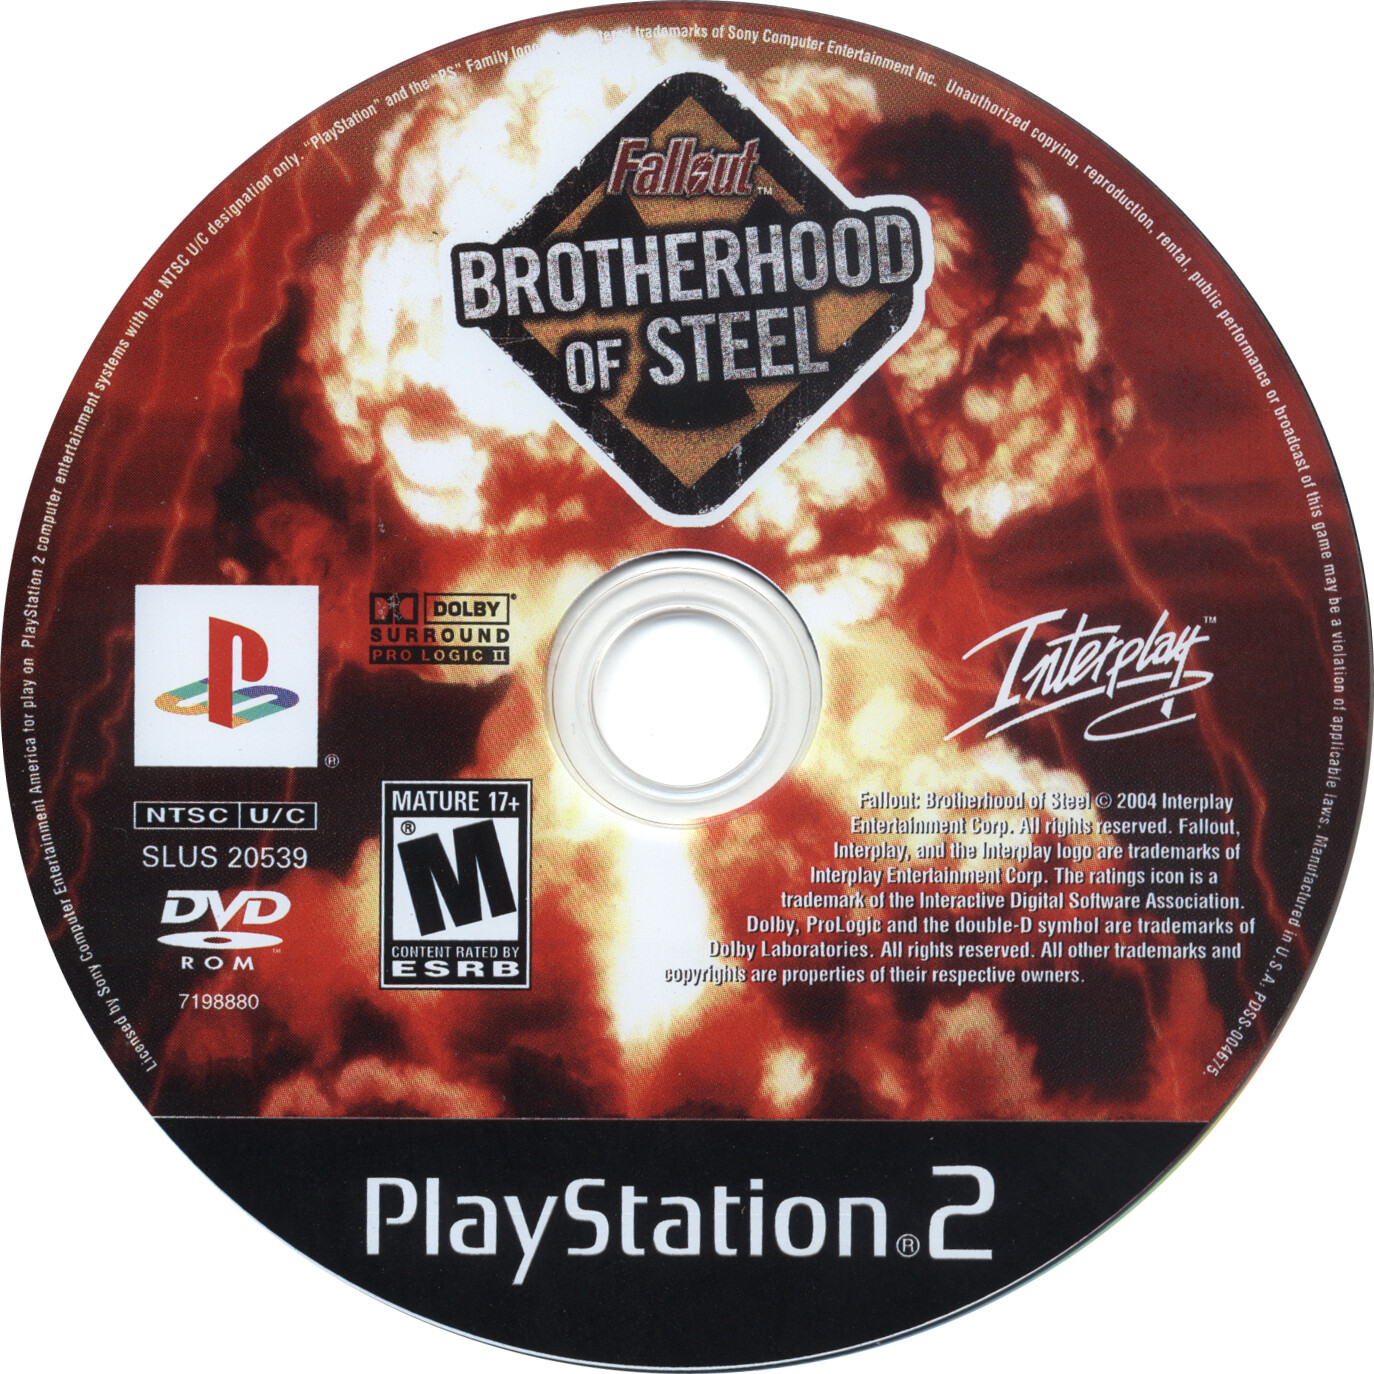 Interplay - Fallout brotherhood of Steel. CD-Game